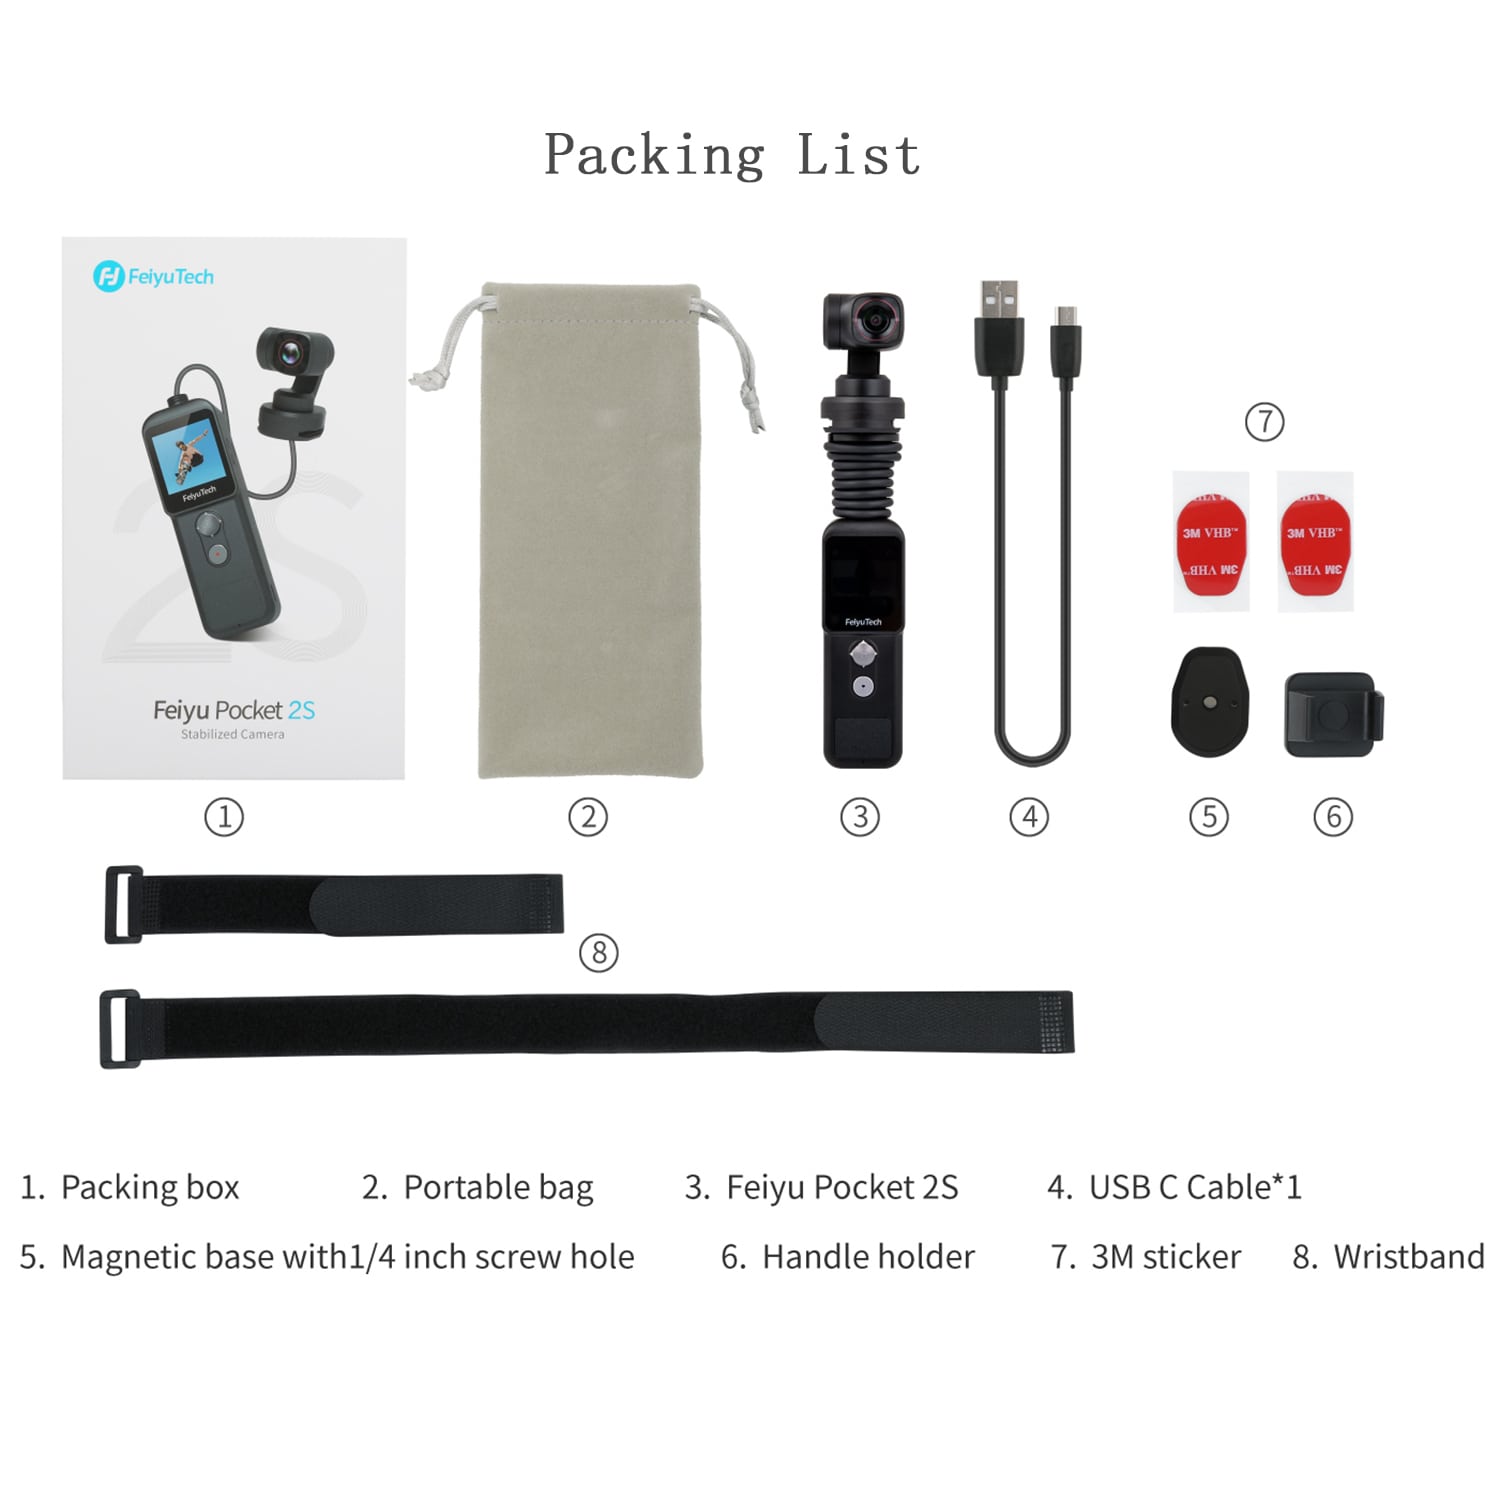 Feiyu Pocket 2S Packing List